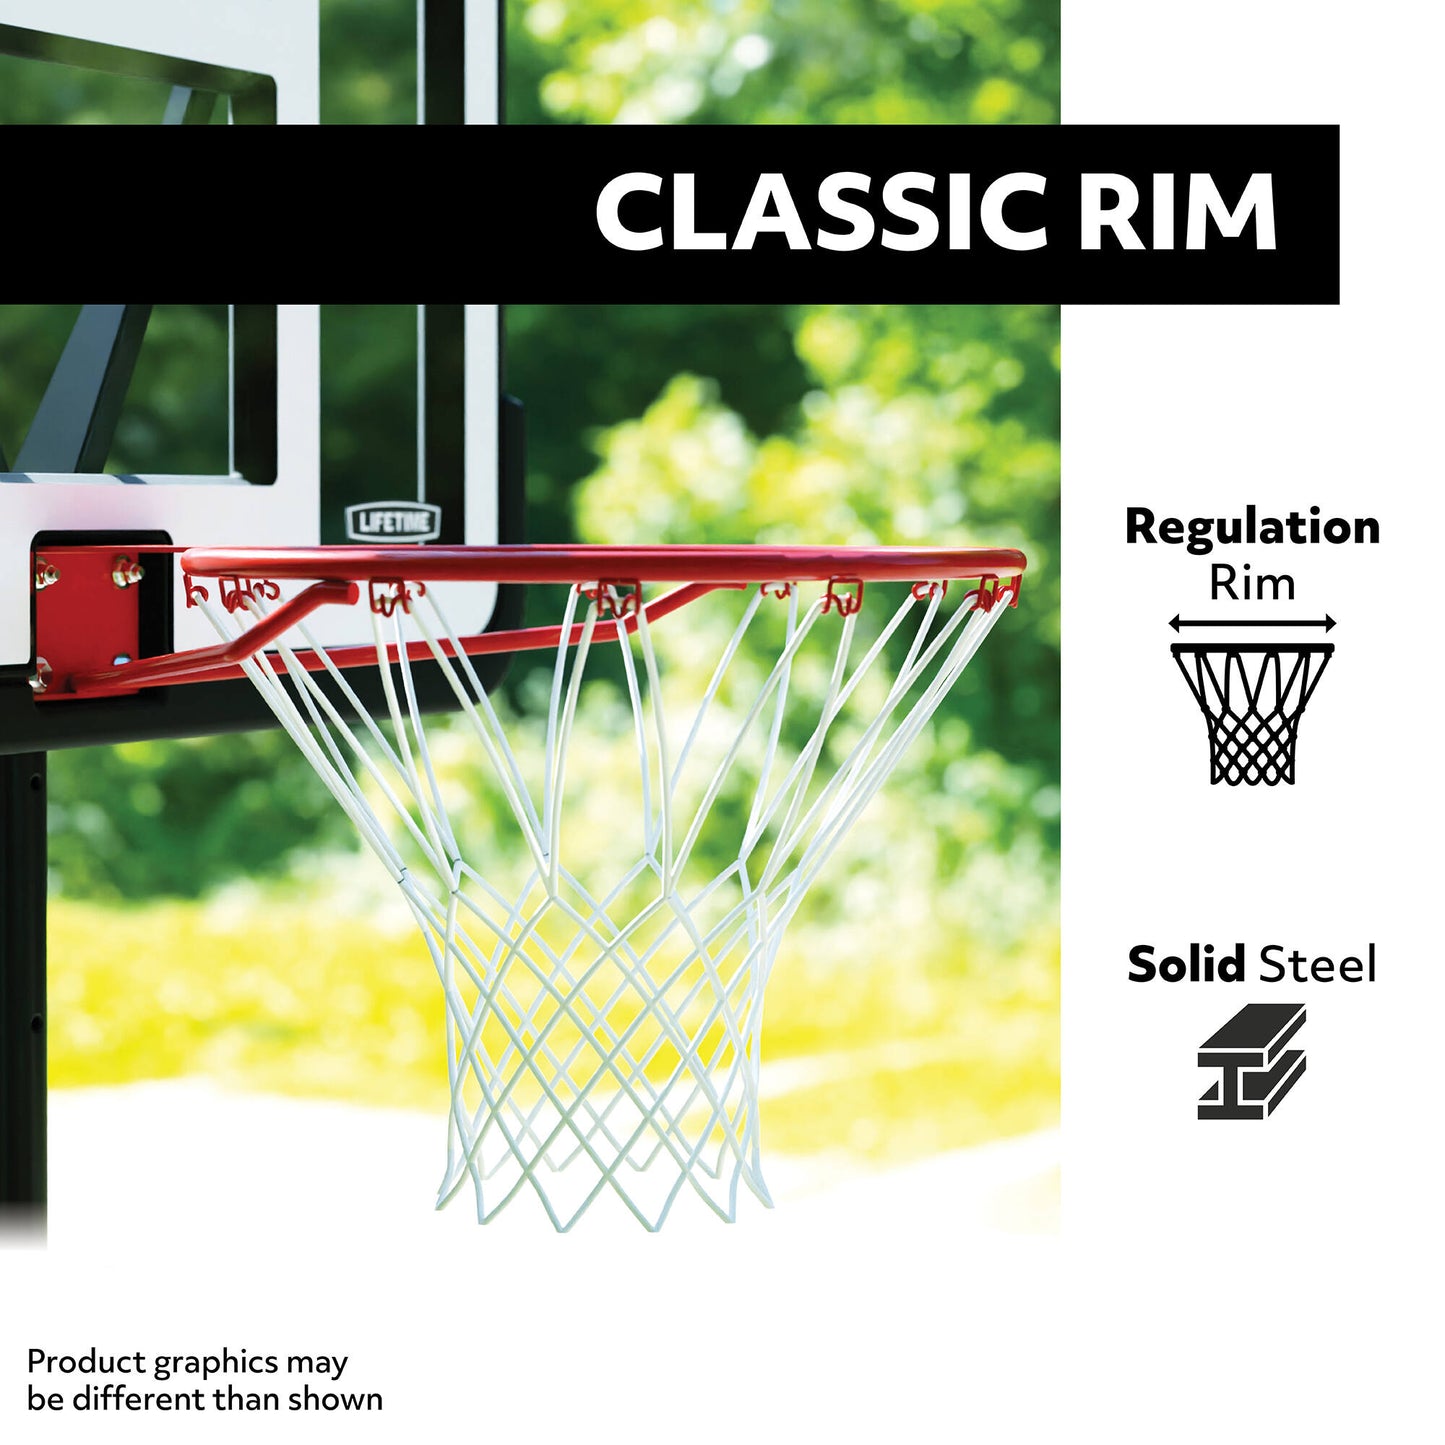 Lifetime Poolside Adjustable Basketball Hoop (44-Inch Impact)